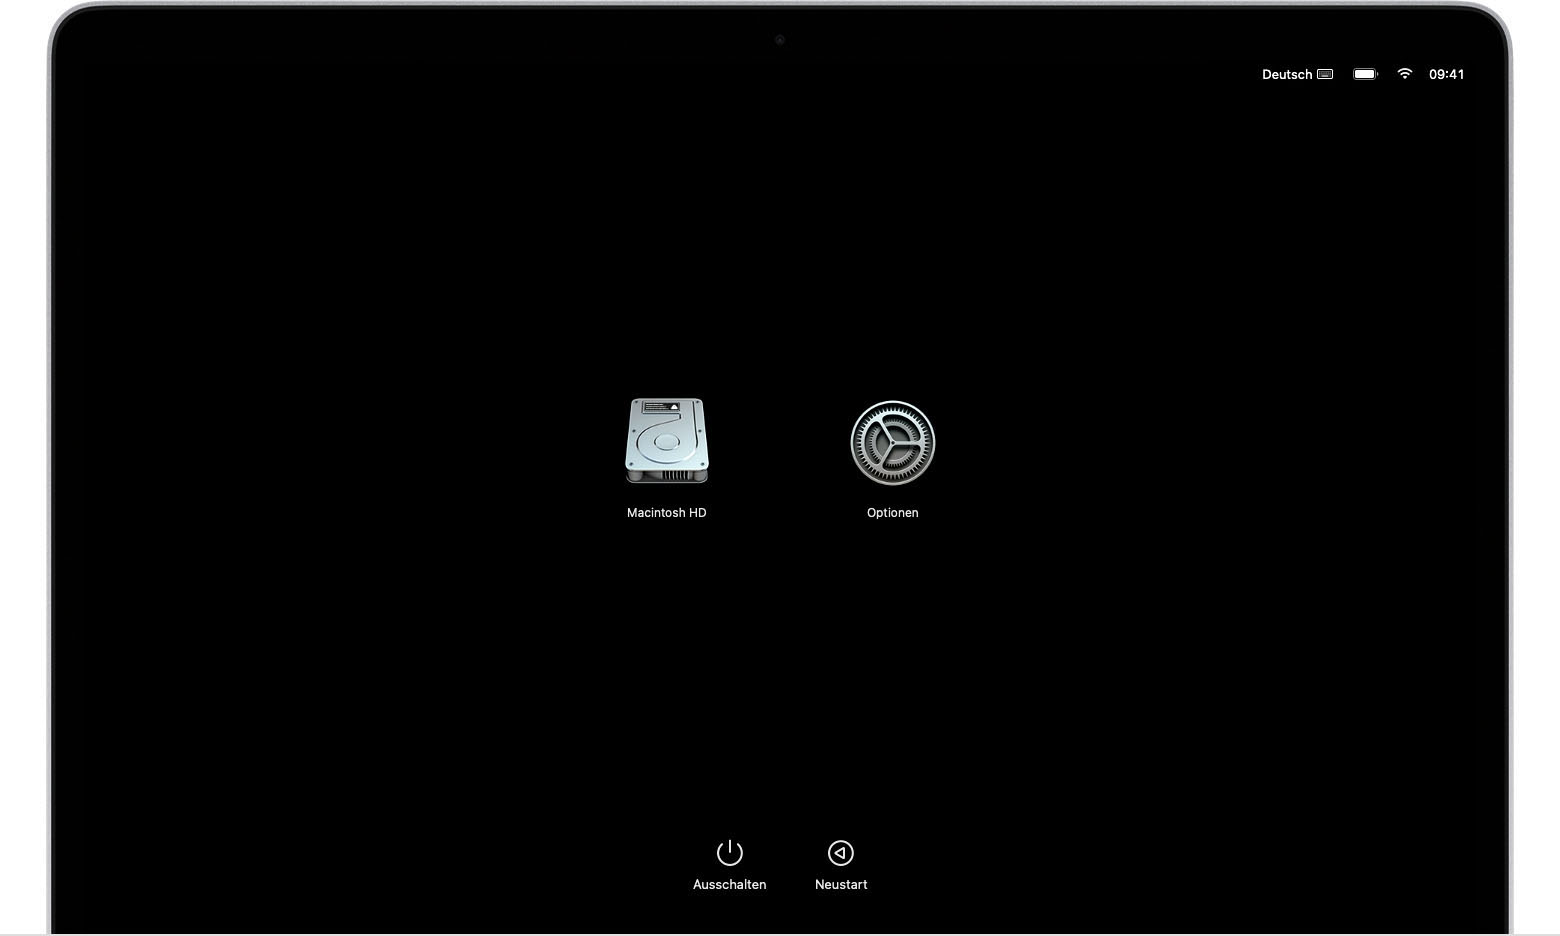 Bildschirm mit macOS-Startoptionen mit Symbolen "Macintosh HD" und "Optionen"